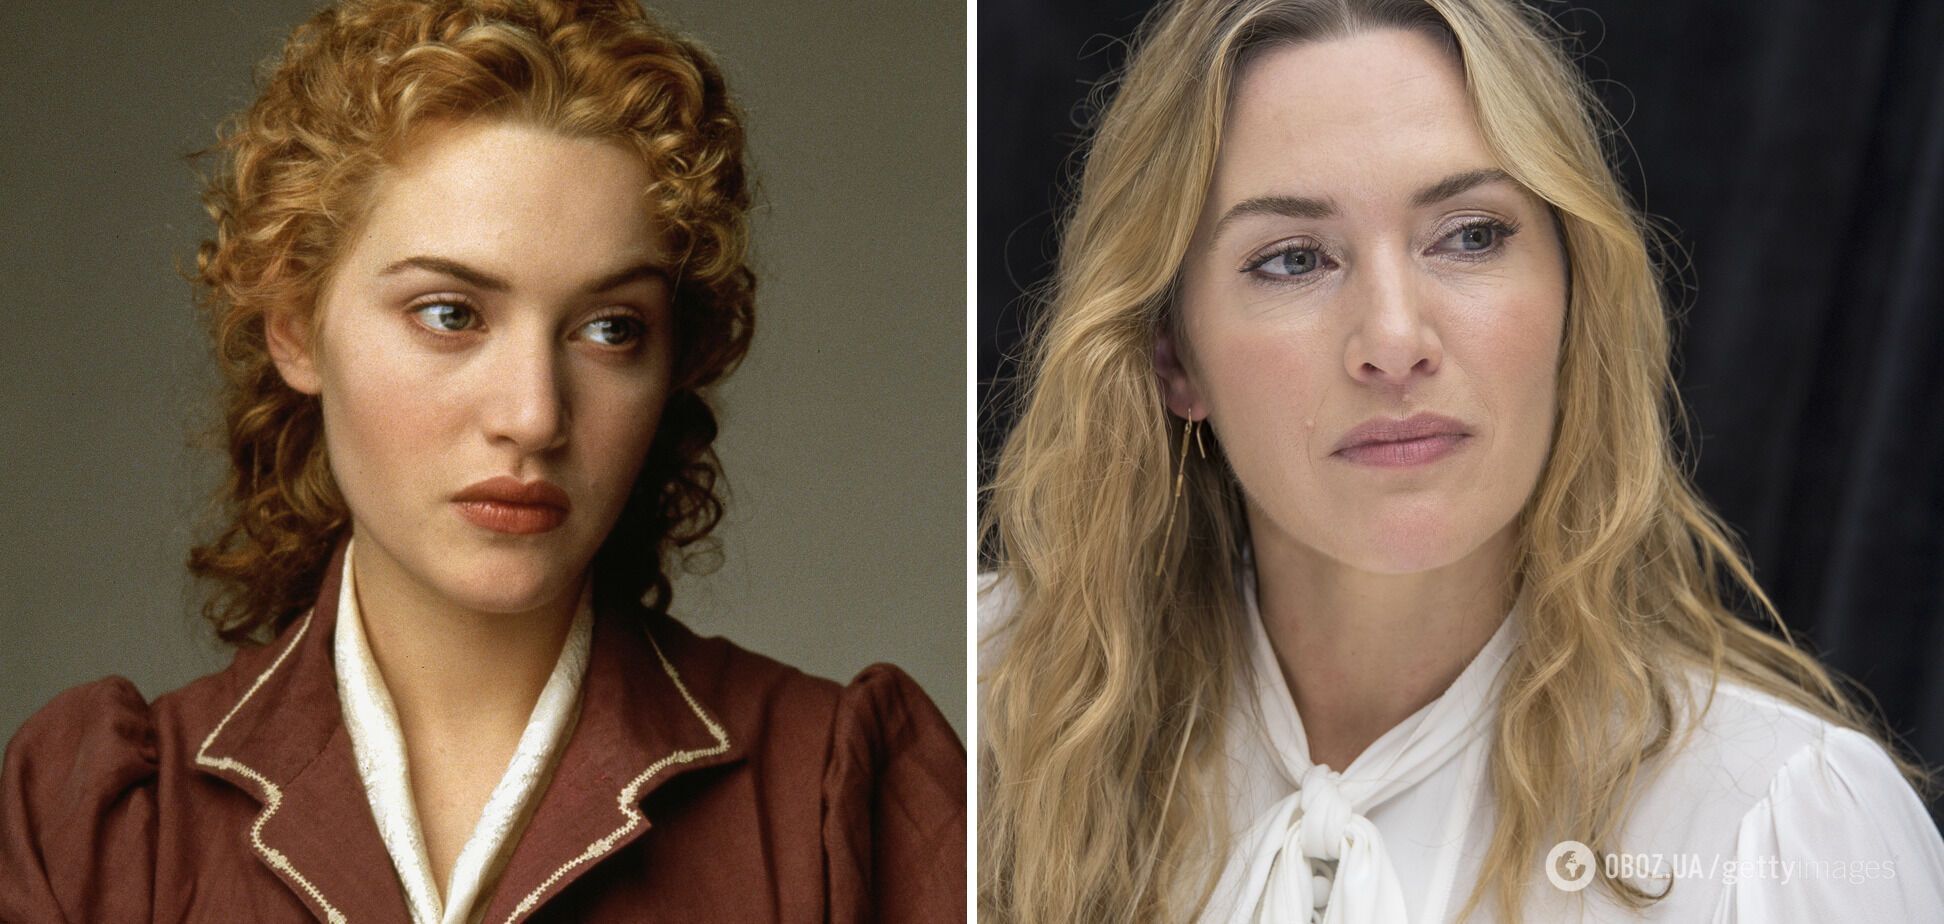 "Морщины видны, но стареет красиво": как звезда "Титаника" Кейт Уинслет изменилась за 30 лет и в чем ее главный секрет